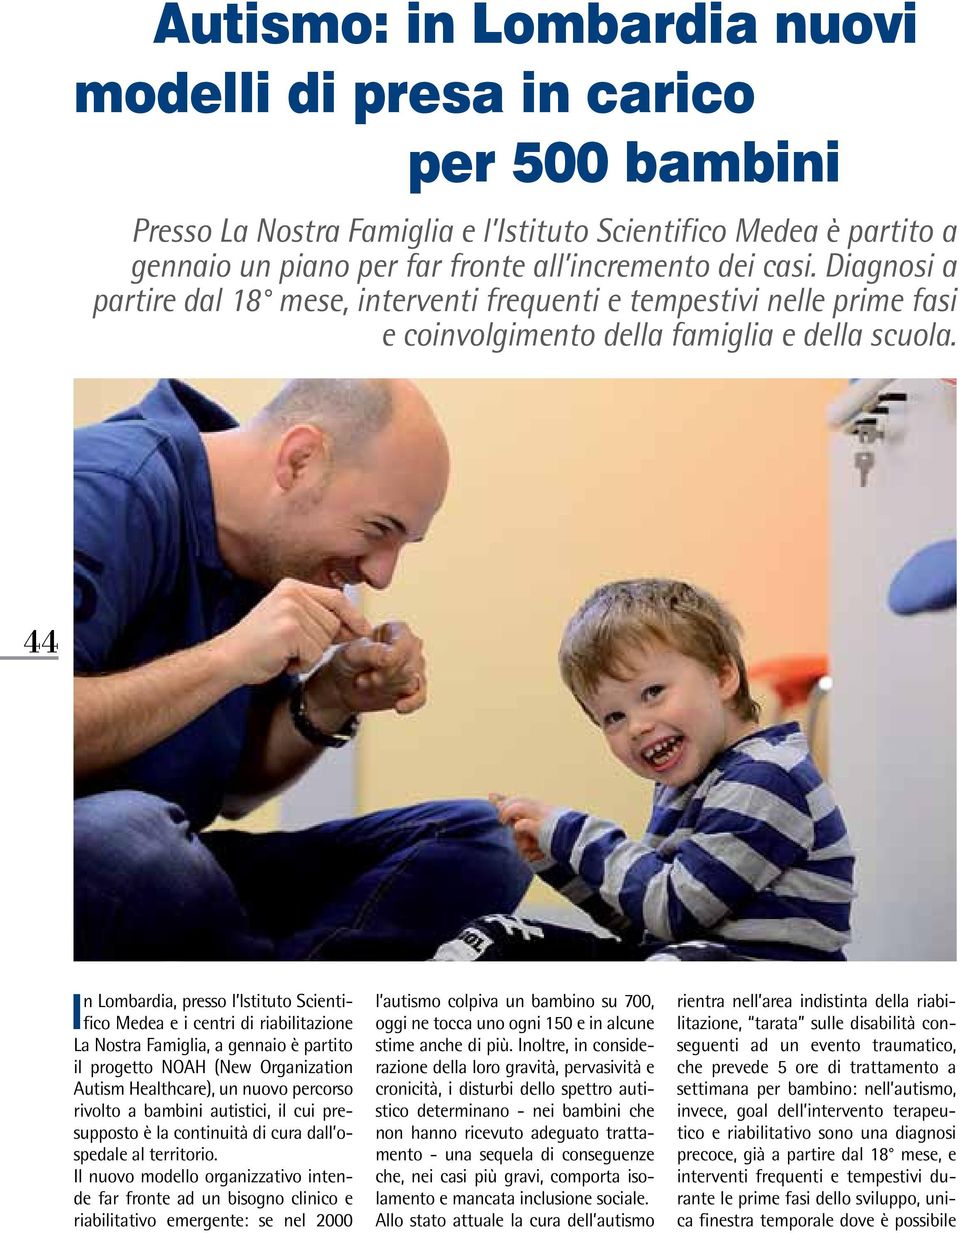 44 In Lombardia, presso l Istituto Scientifico Medea e i centri di riabilitazione La Nostra Famiglia, a gennaio è partito il progetto NOAH (New Organization Autism Healthcare), un nuovo percorso